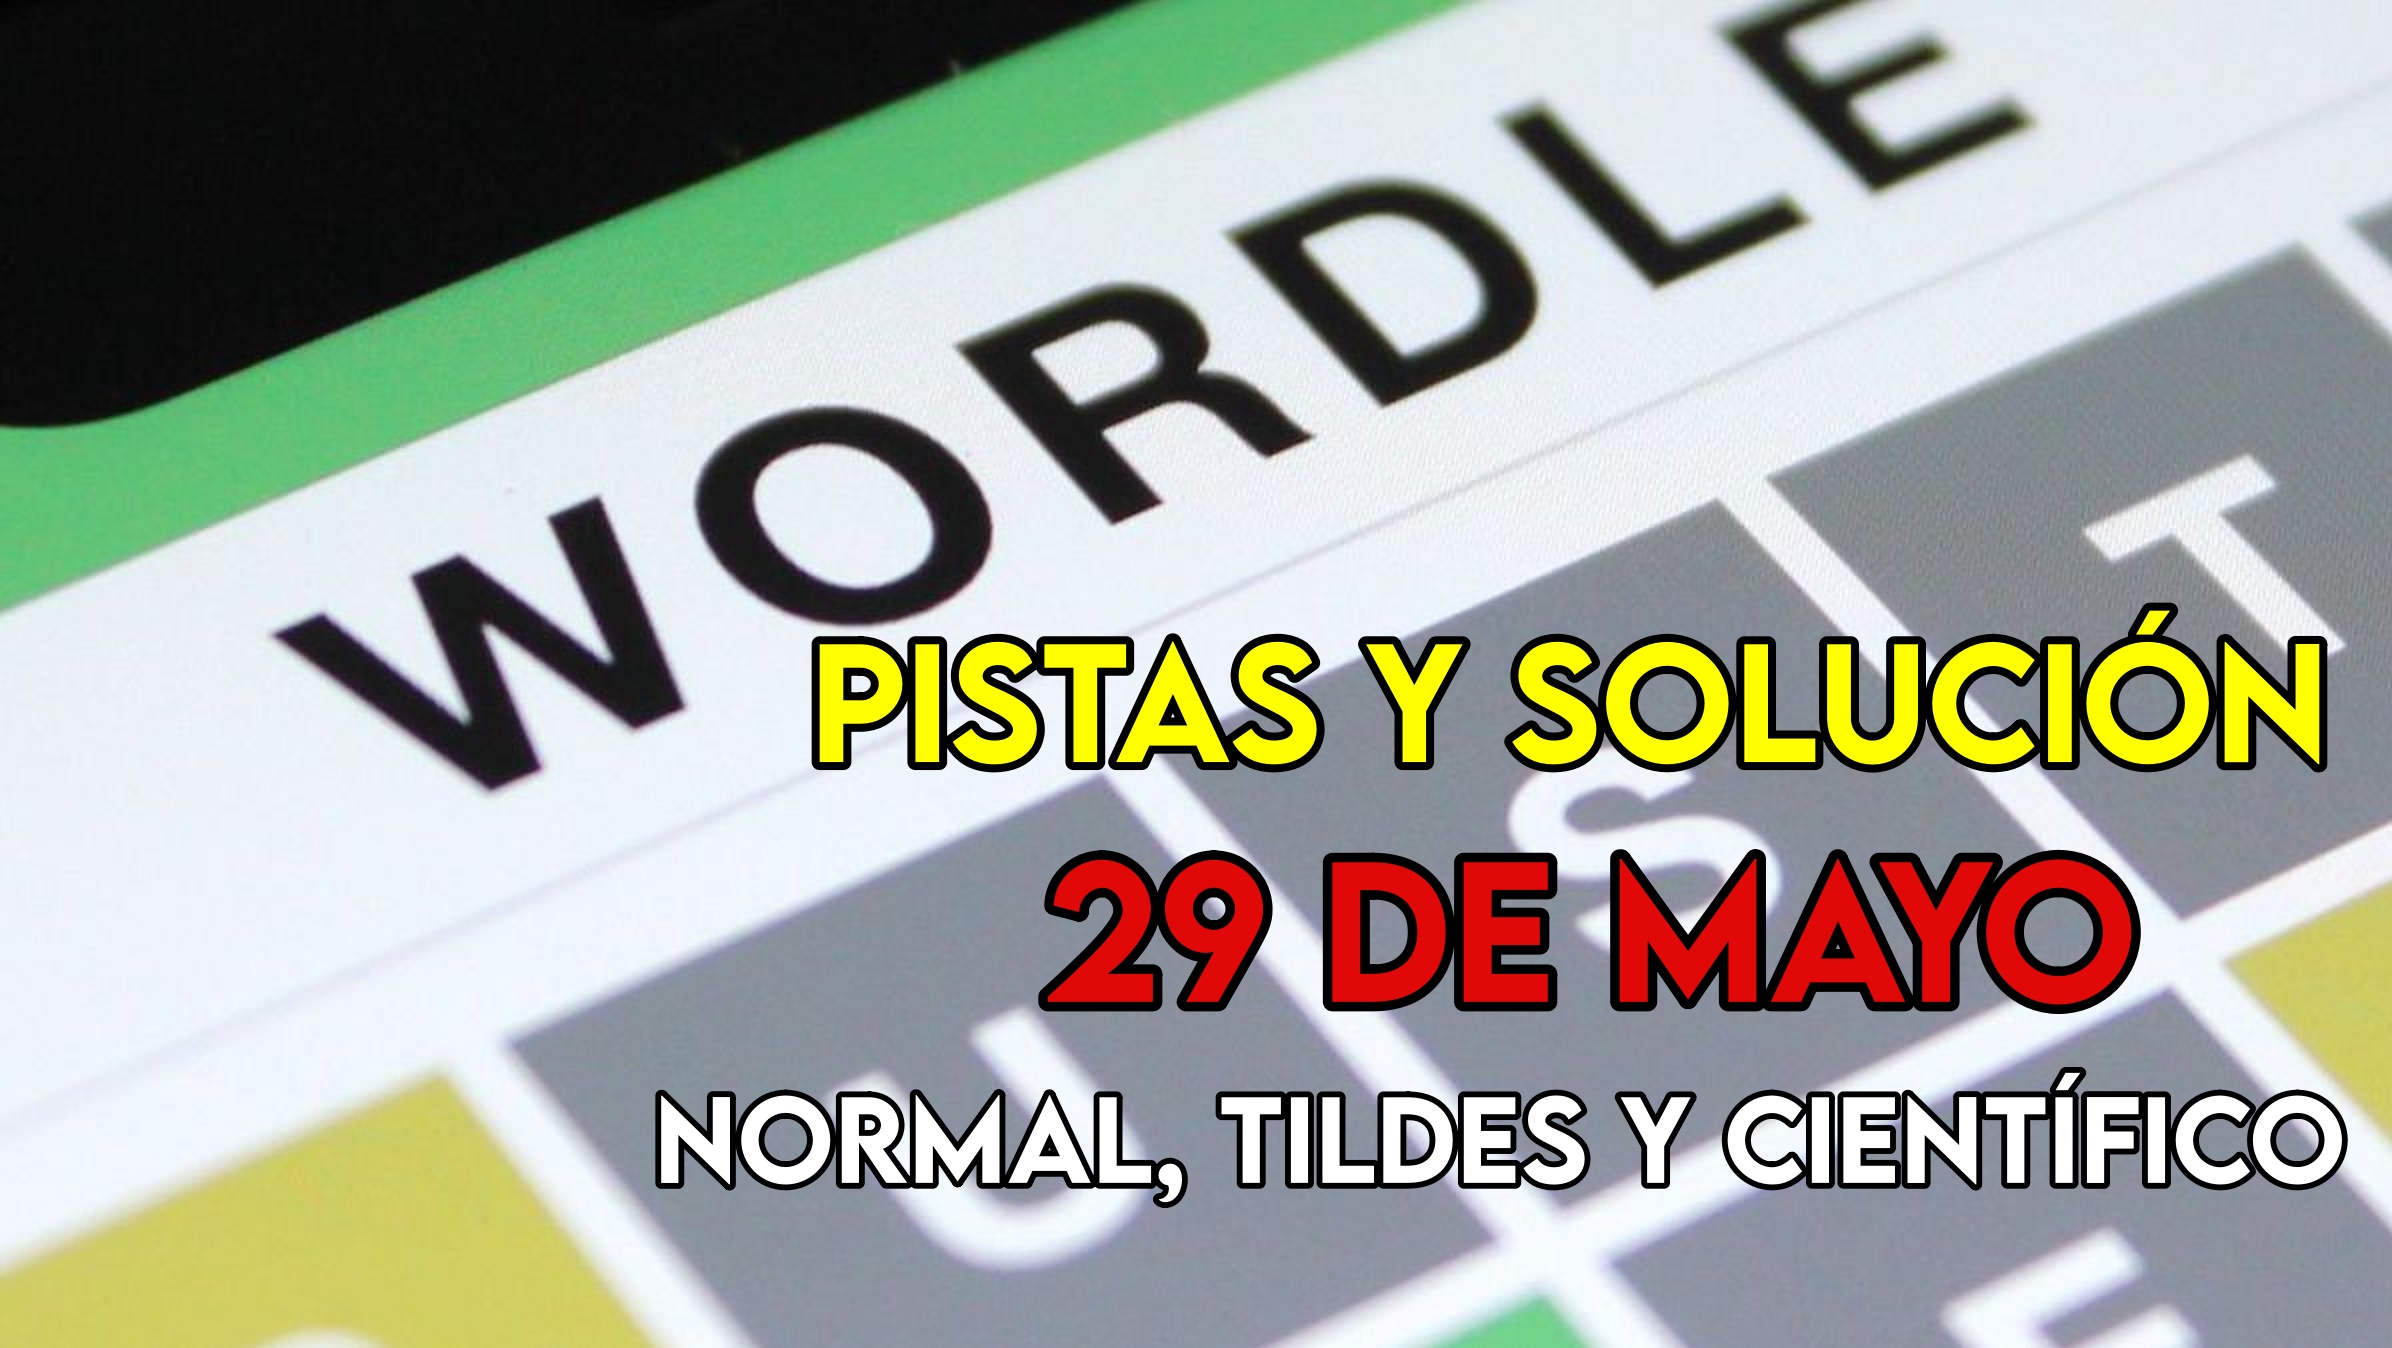 Wordle en español, científico y tildes para el reto de hoy 29 de mayo: pistas y solución